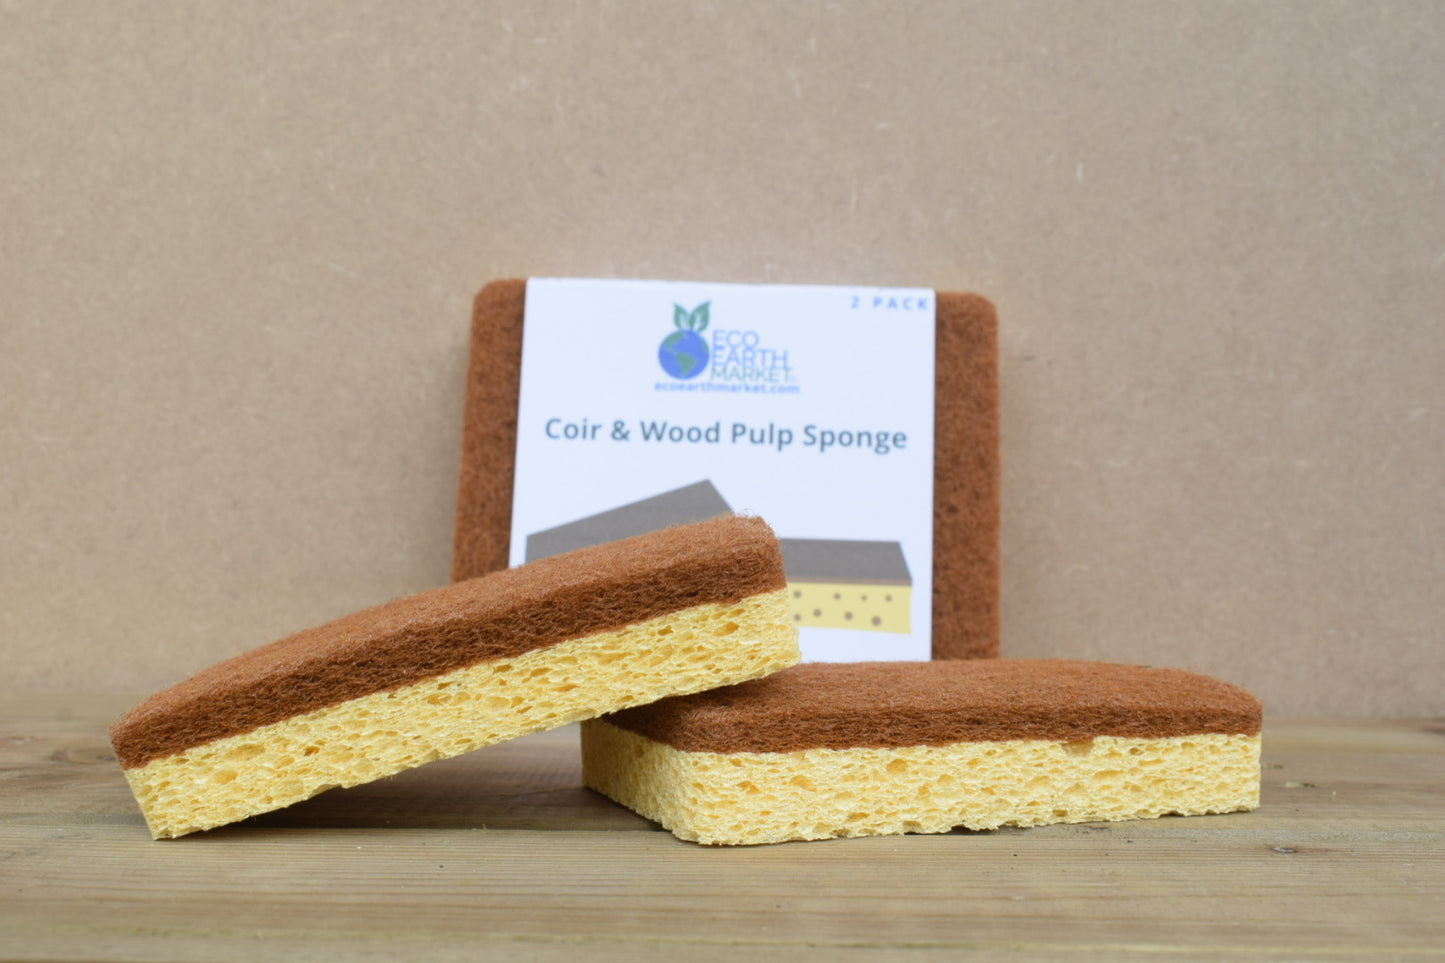 Coir & Wood Pulp Sponge (2 Pack)